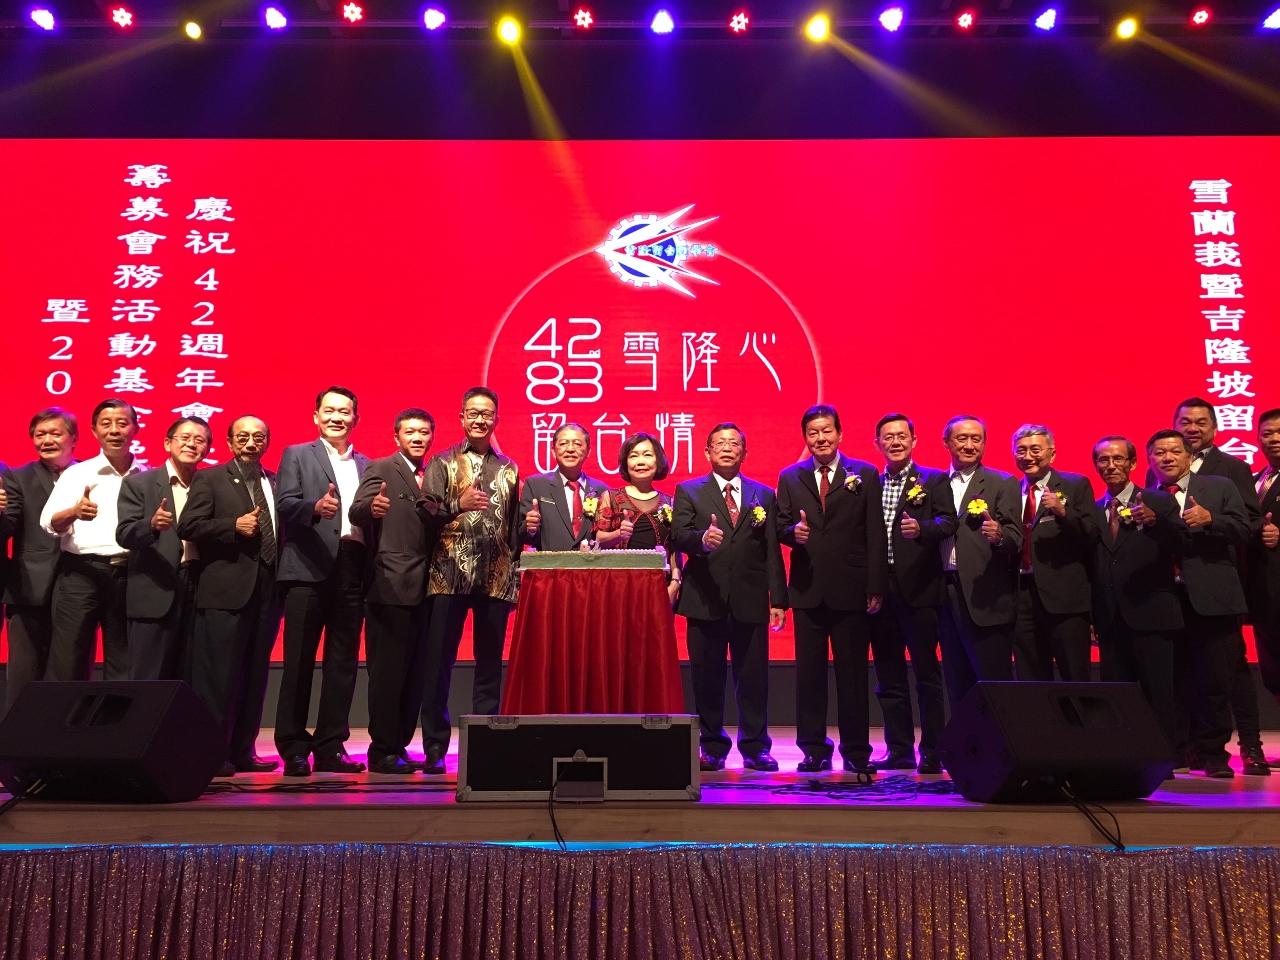 洪大使慧珠(左9)出席雪蘭莪暨吉隆坡留臺同學會42週年會慶2019年雪隆之夜晚宴與全體貴賓合影留念。
